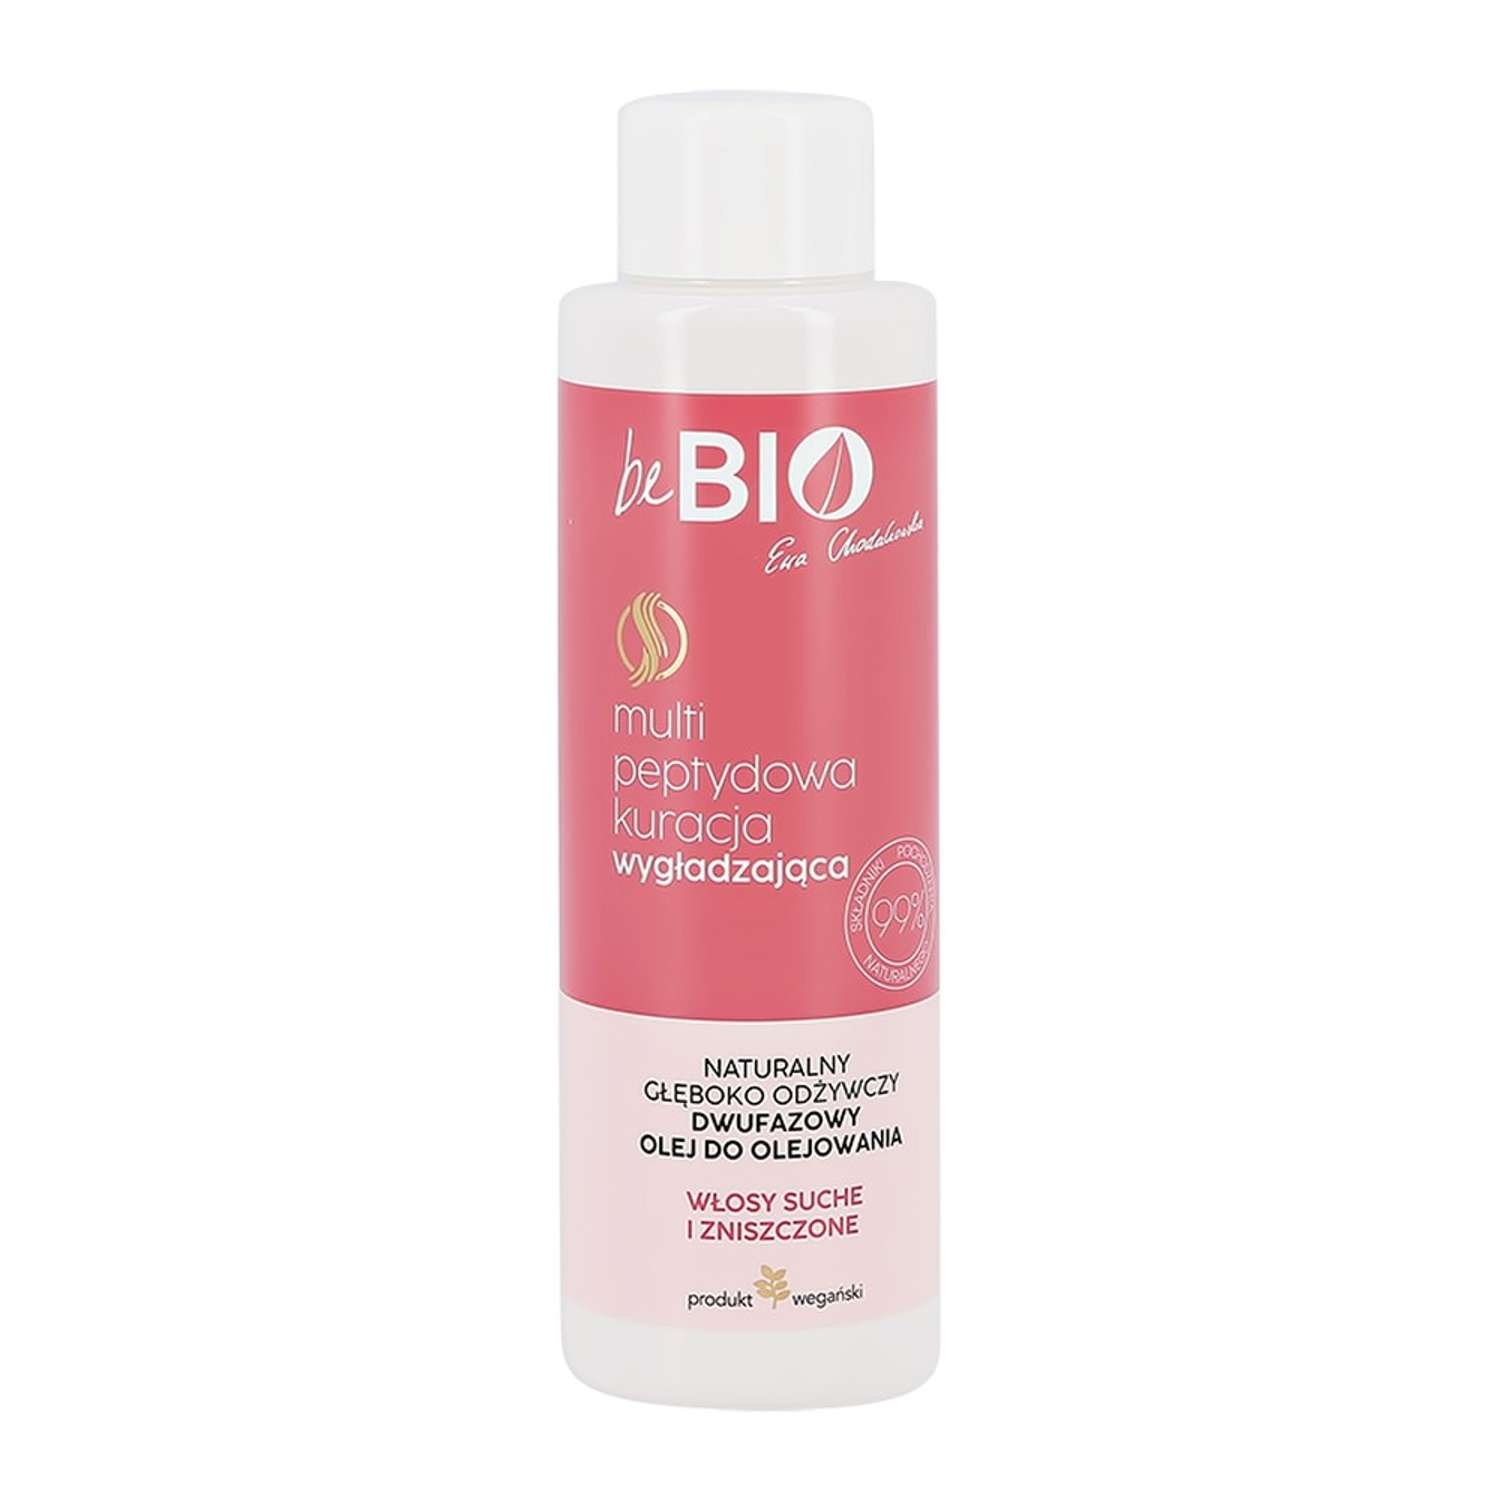 Масло для волос beBio с биопептидами питательное 100 мл - фото 2